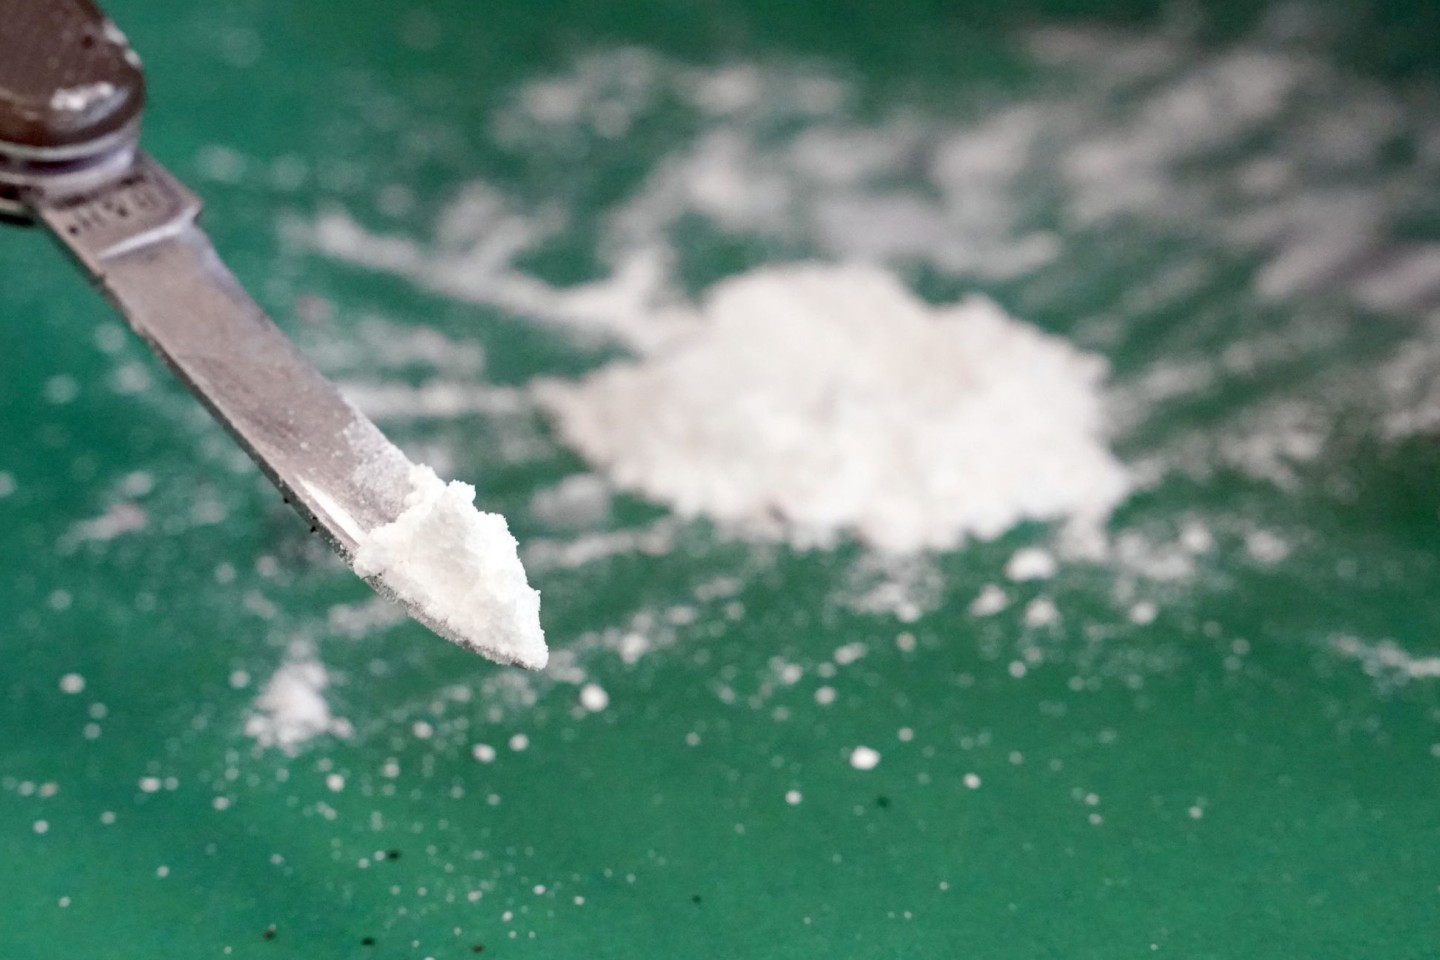 Kokain mit einem Straßenverkaufswert in zweistelliger Millionenhöhe ist in Kapstadt sichergestellt worden. (Symbolbild)